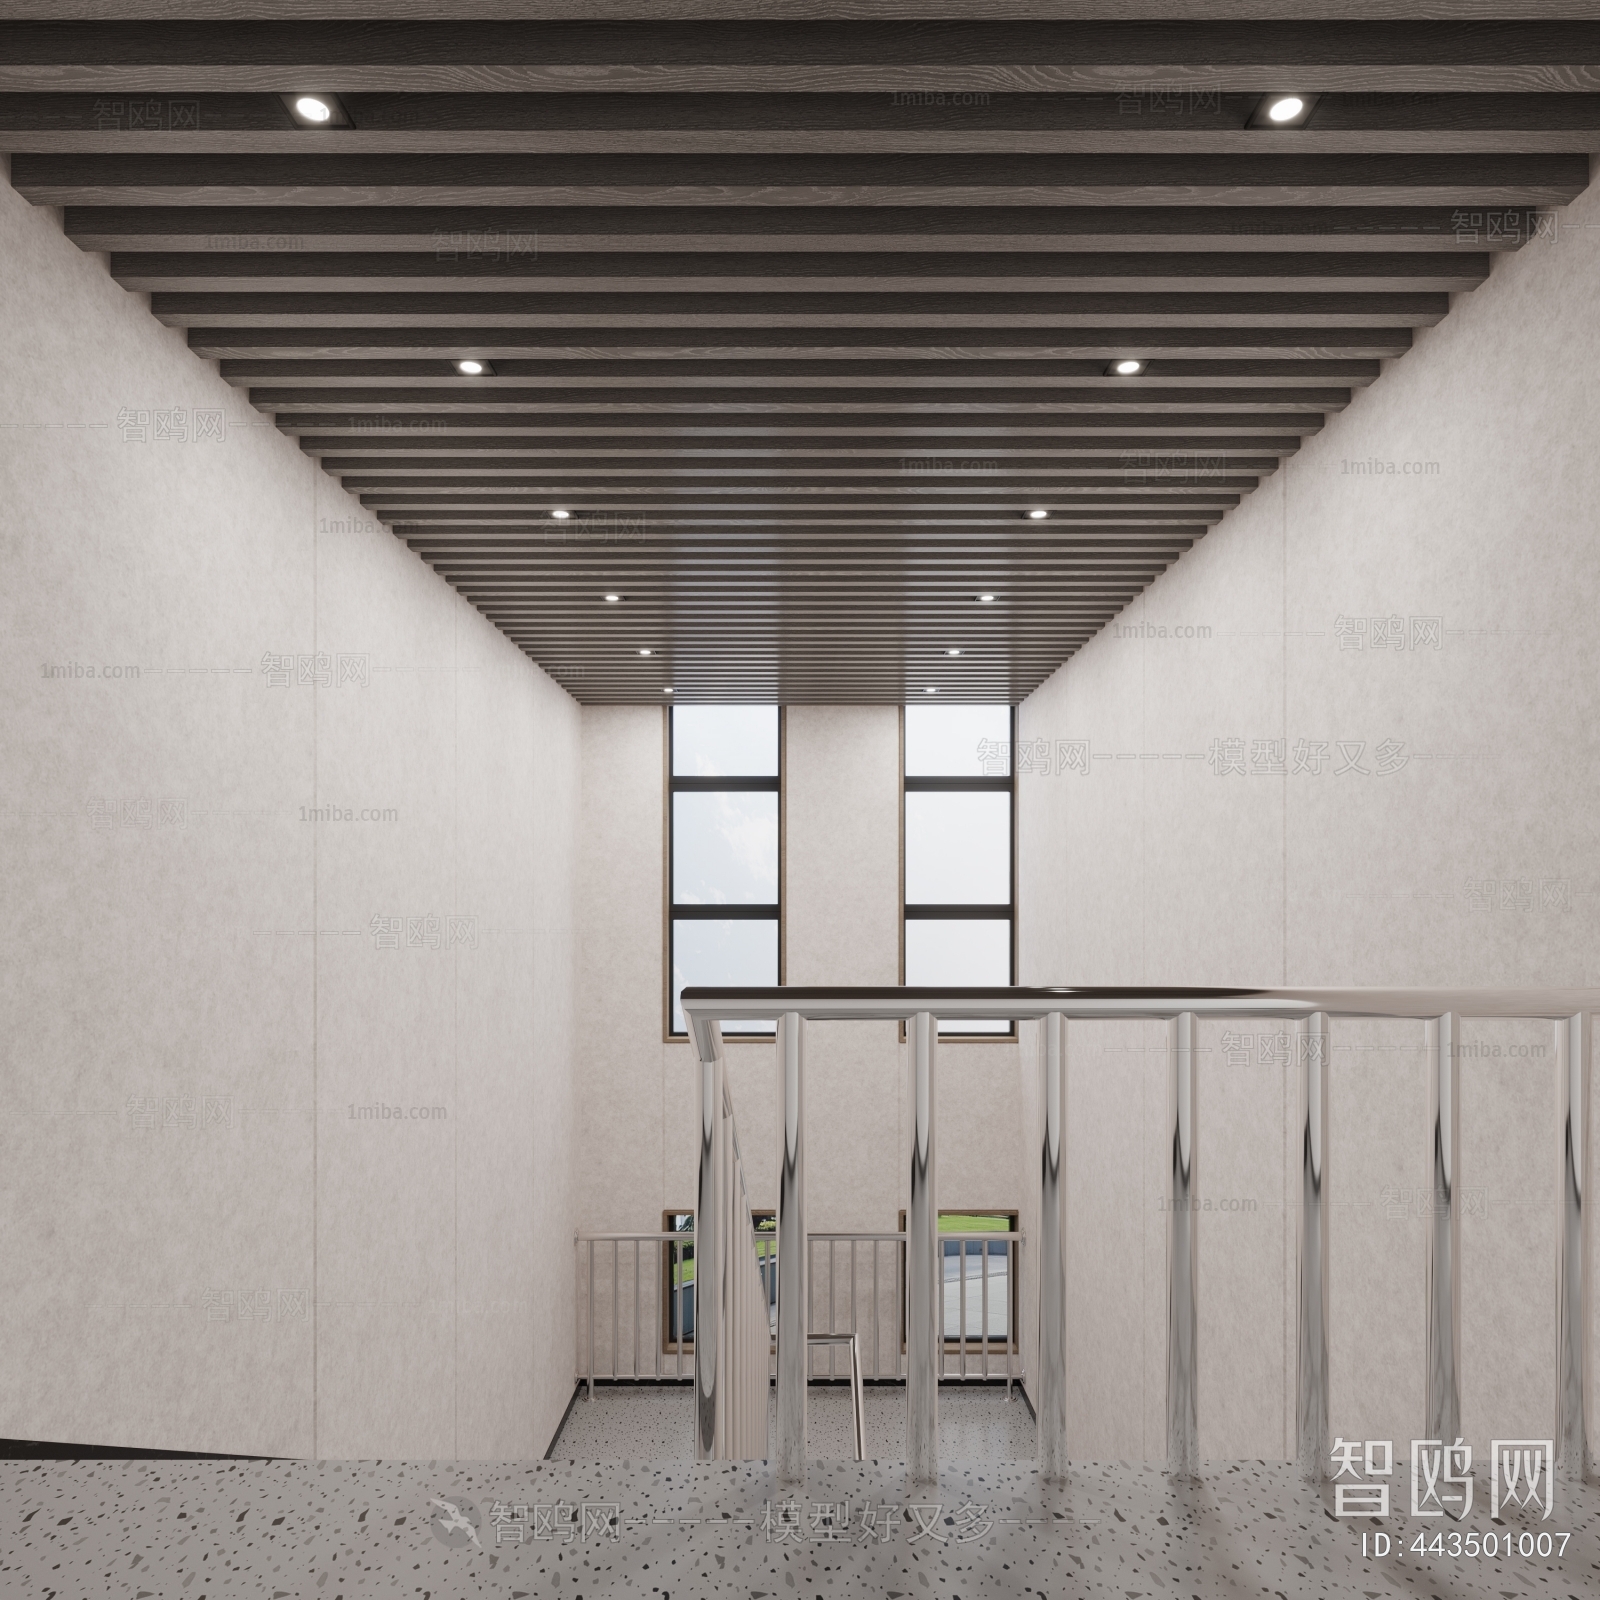 多场景-现代新中式办公过道+茶室+楼梯间